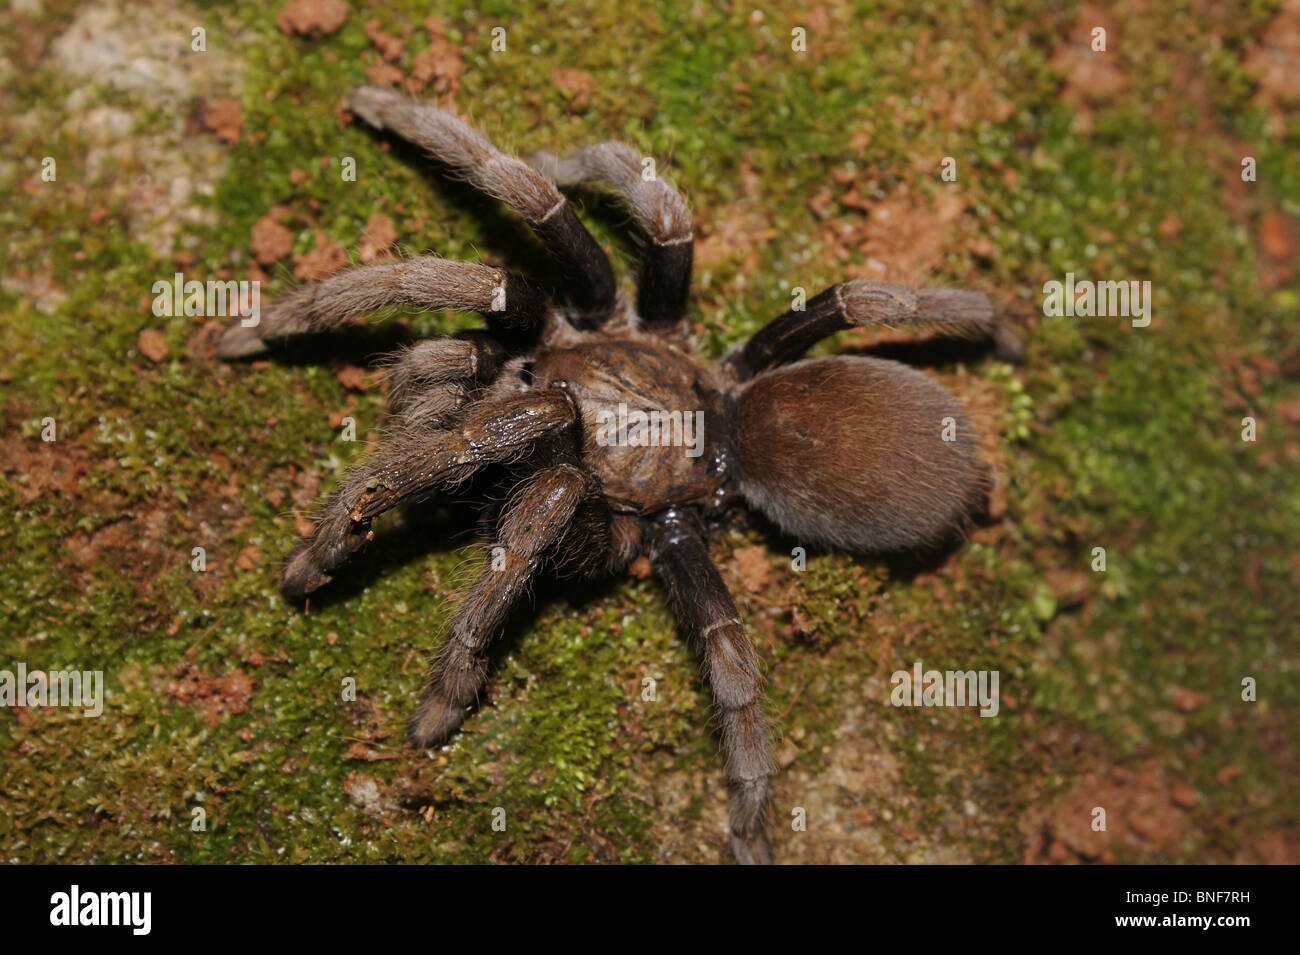 TARANTULA  Hairy, large spider belonging to family Theraphosidae venomous. Place Amboli Maharashtra, INDIA Stock Photo